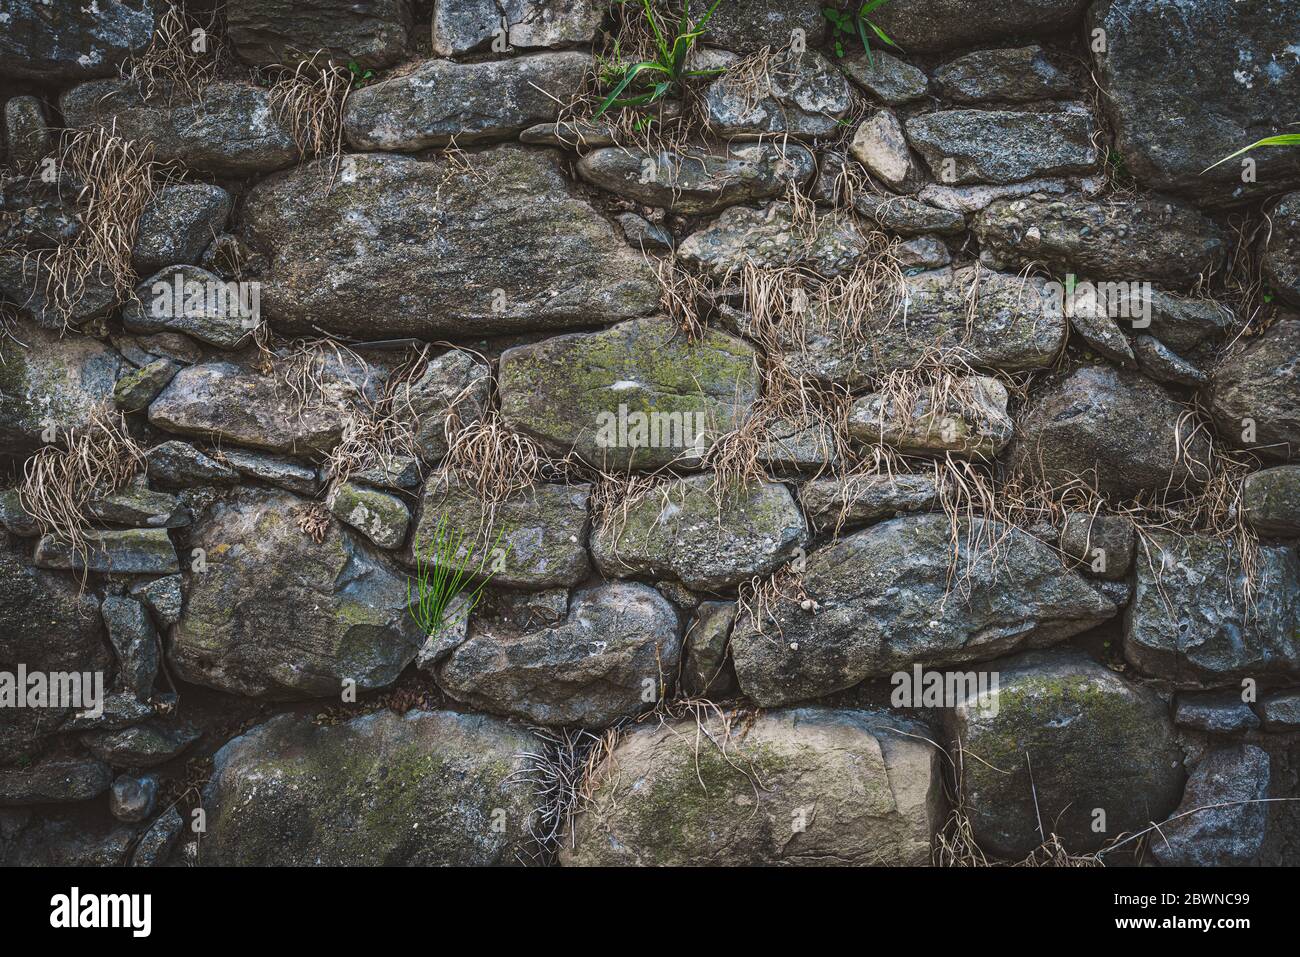 Vieux mur de pierre naturelle avec végétation verte et sèche qui pousse parmi les rochers Banque D'Images